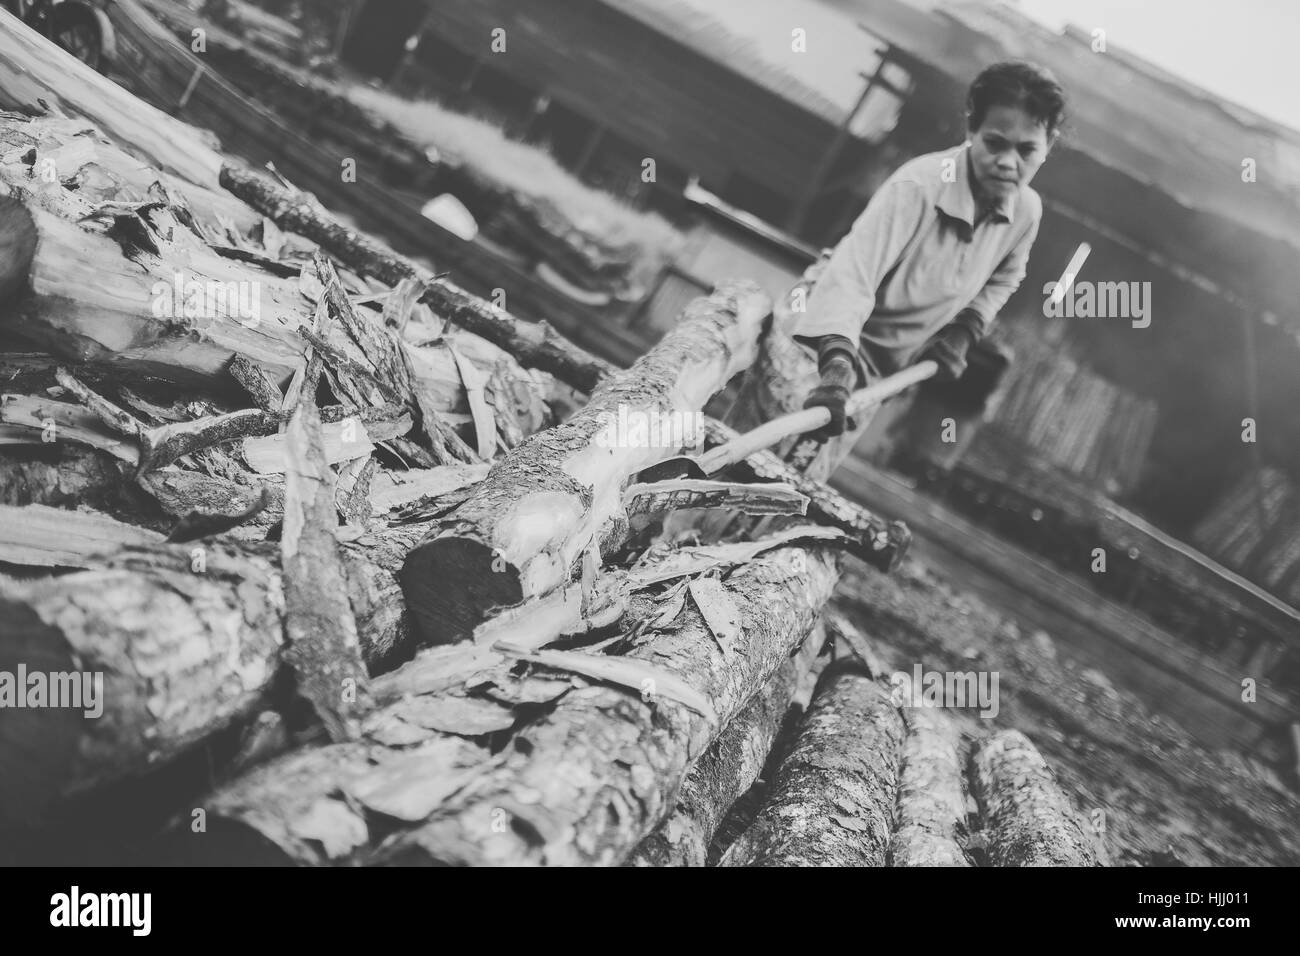 Les travailleurs du charbon de couper l'écorce d'un arbre de la mangrove Banque D'Images